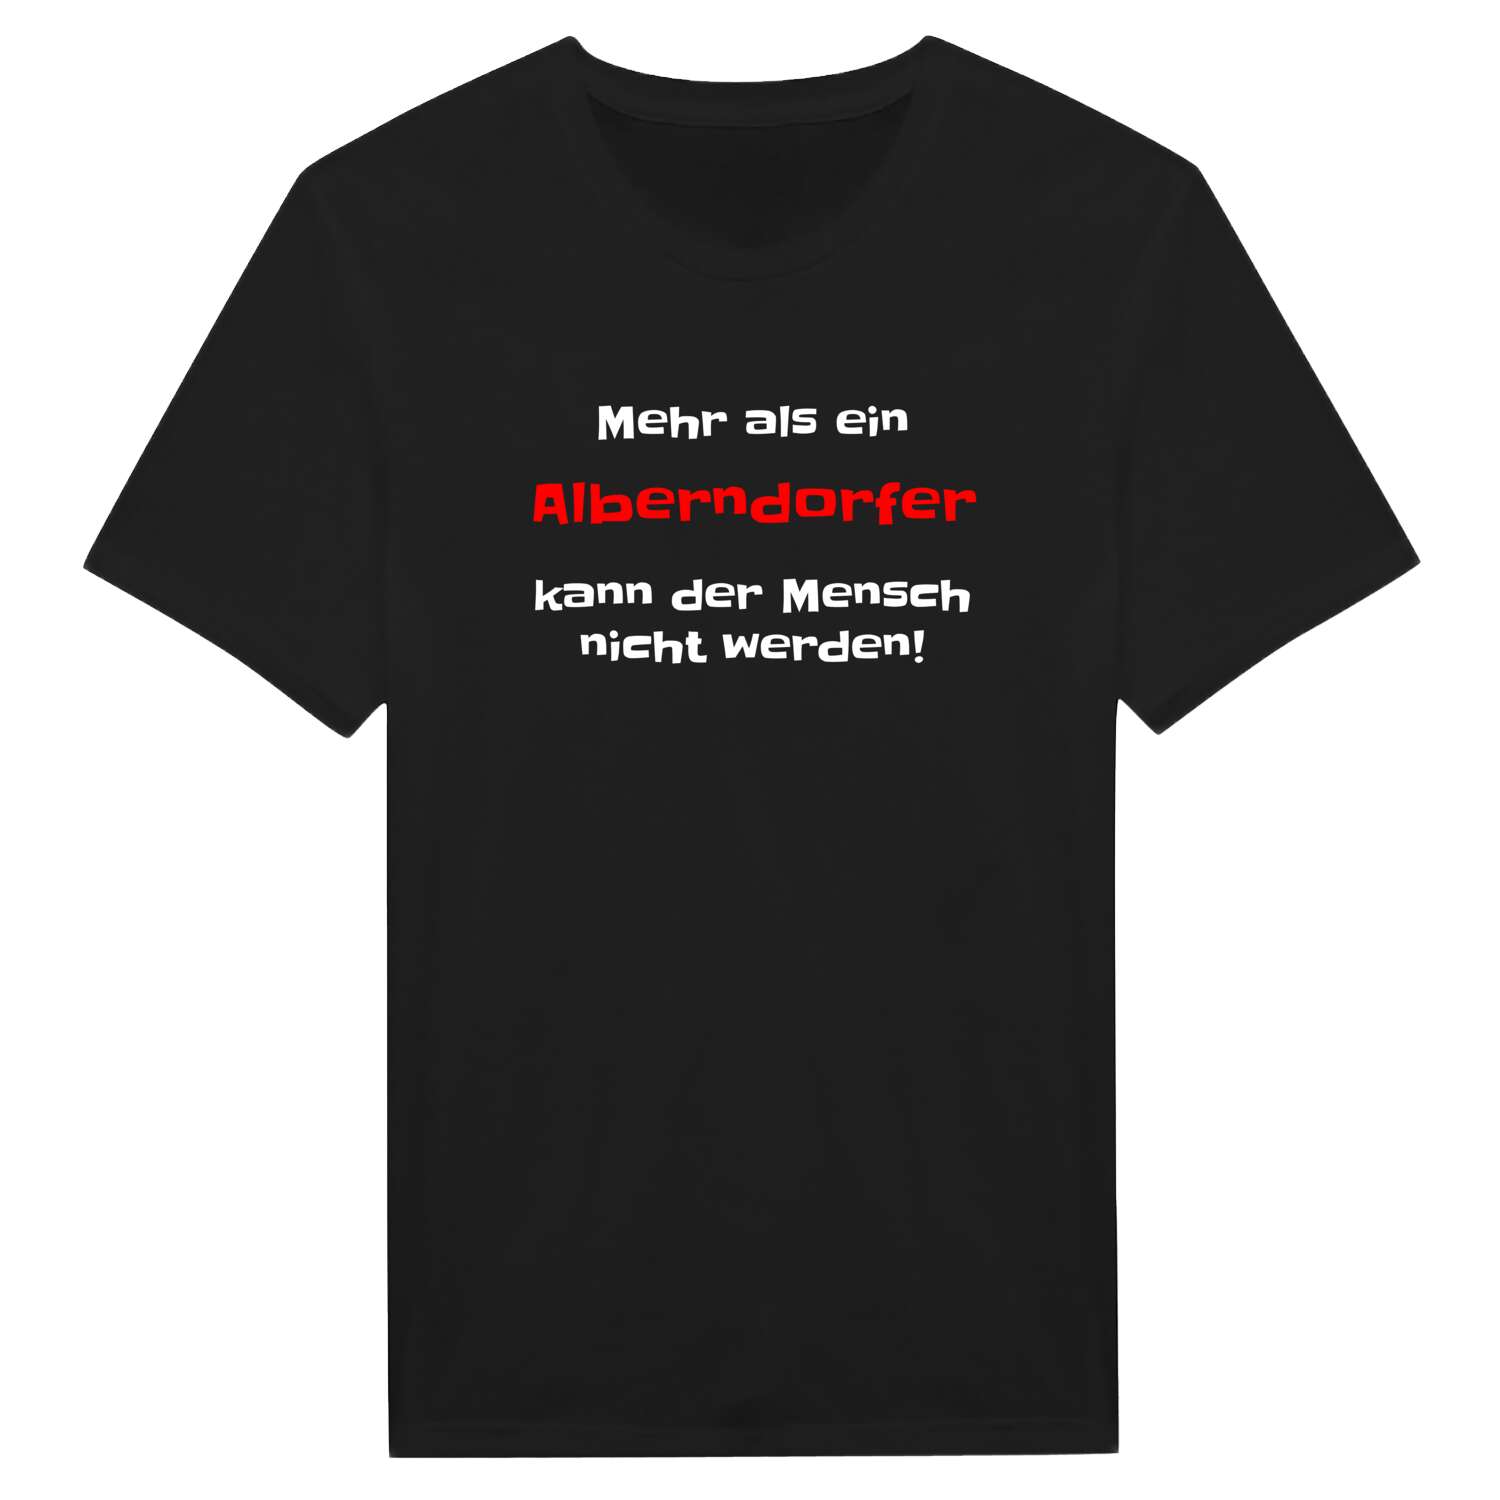 Alberndorf T-Shirt »Mehr als ein«